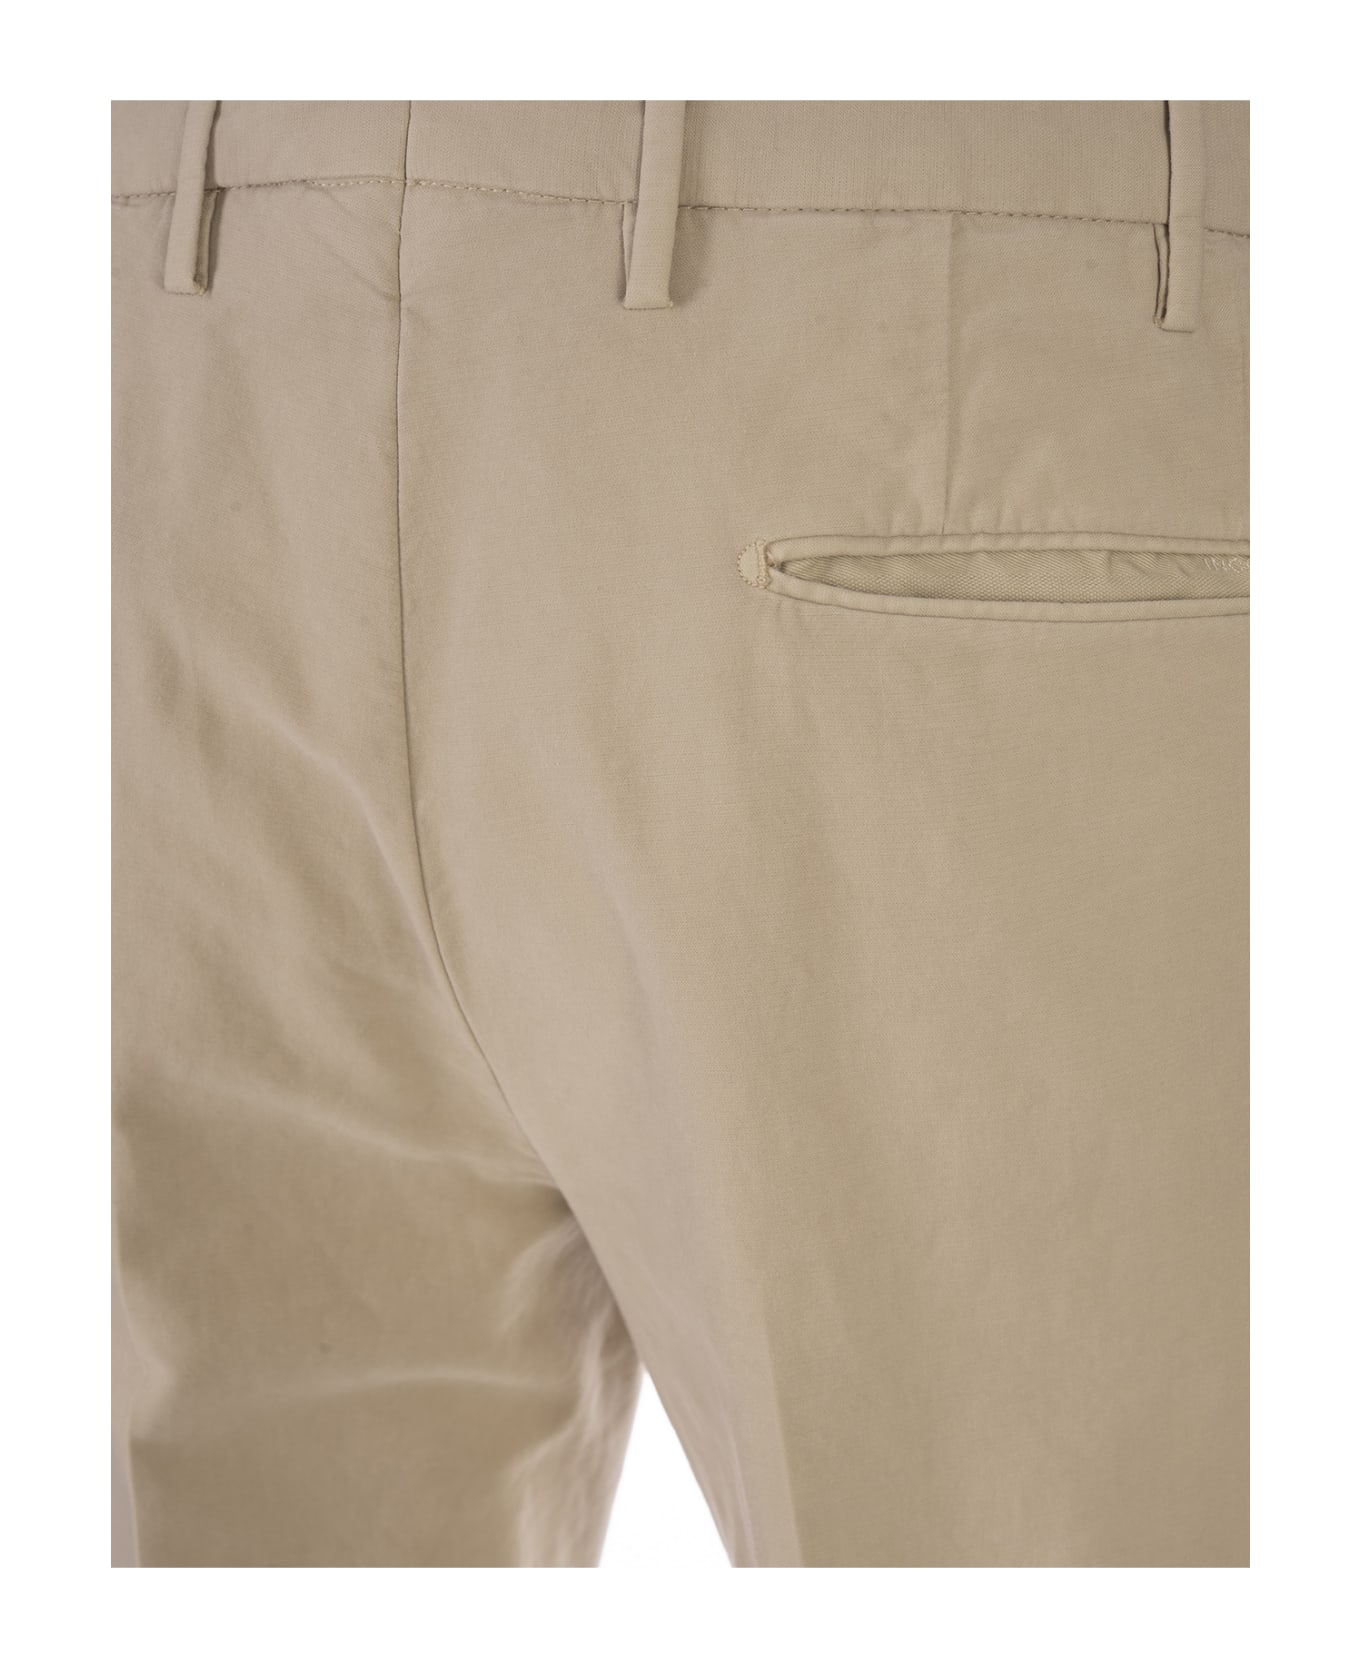 Incotex Slim Fit Trousers In Beige Certified Doeskin